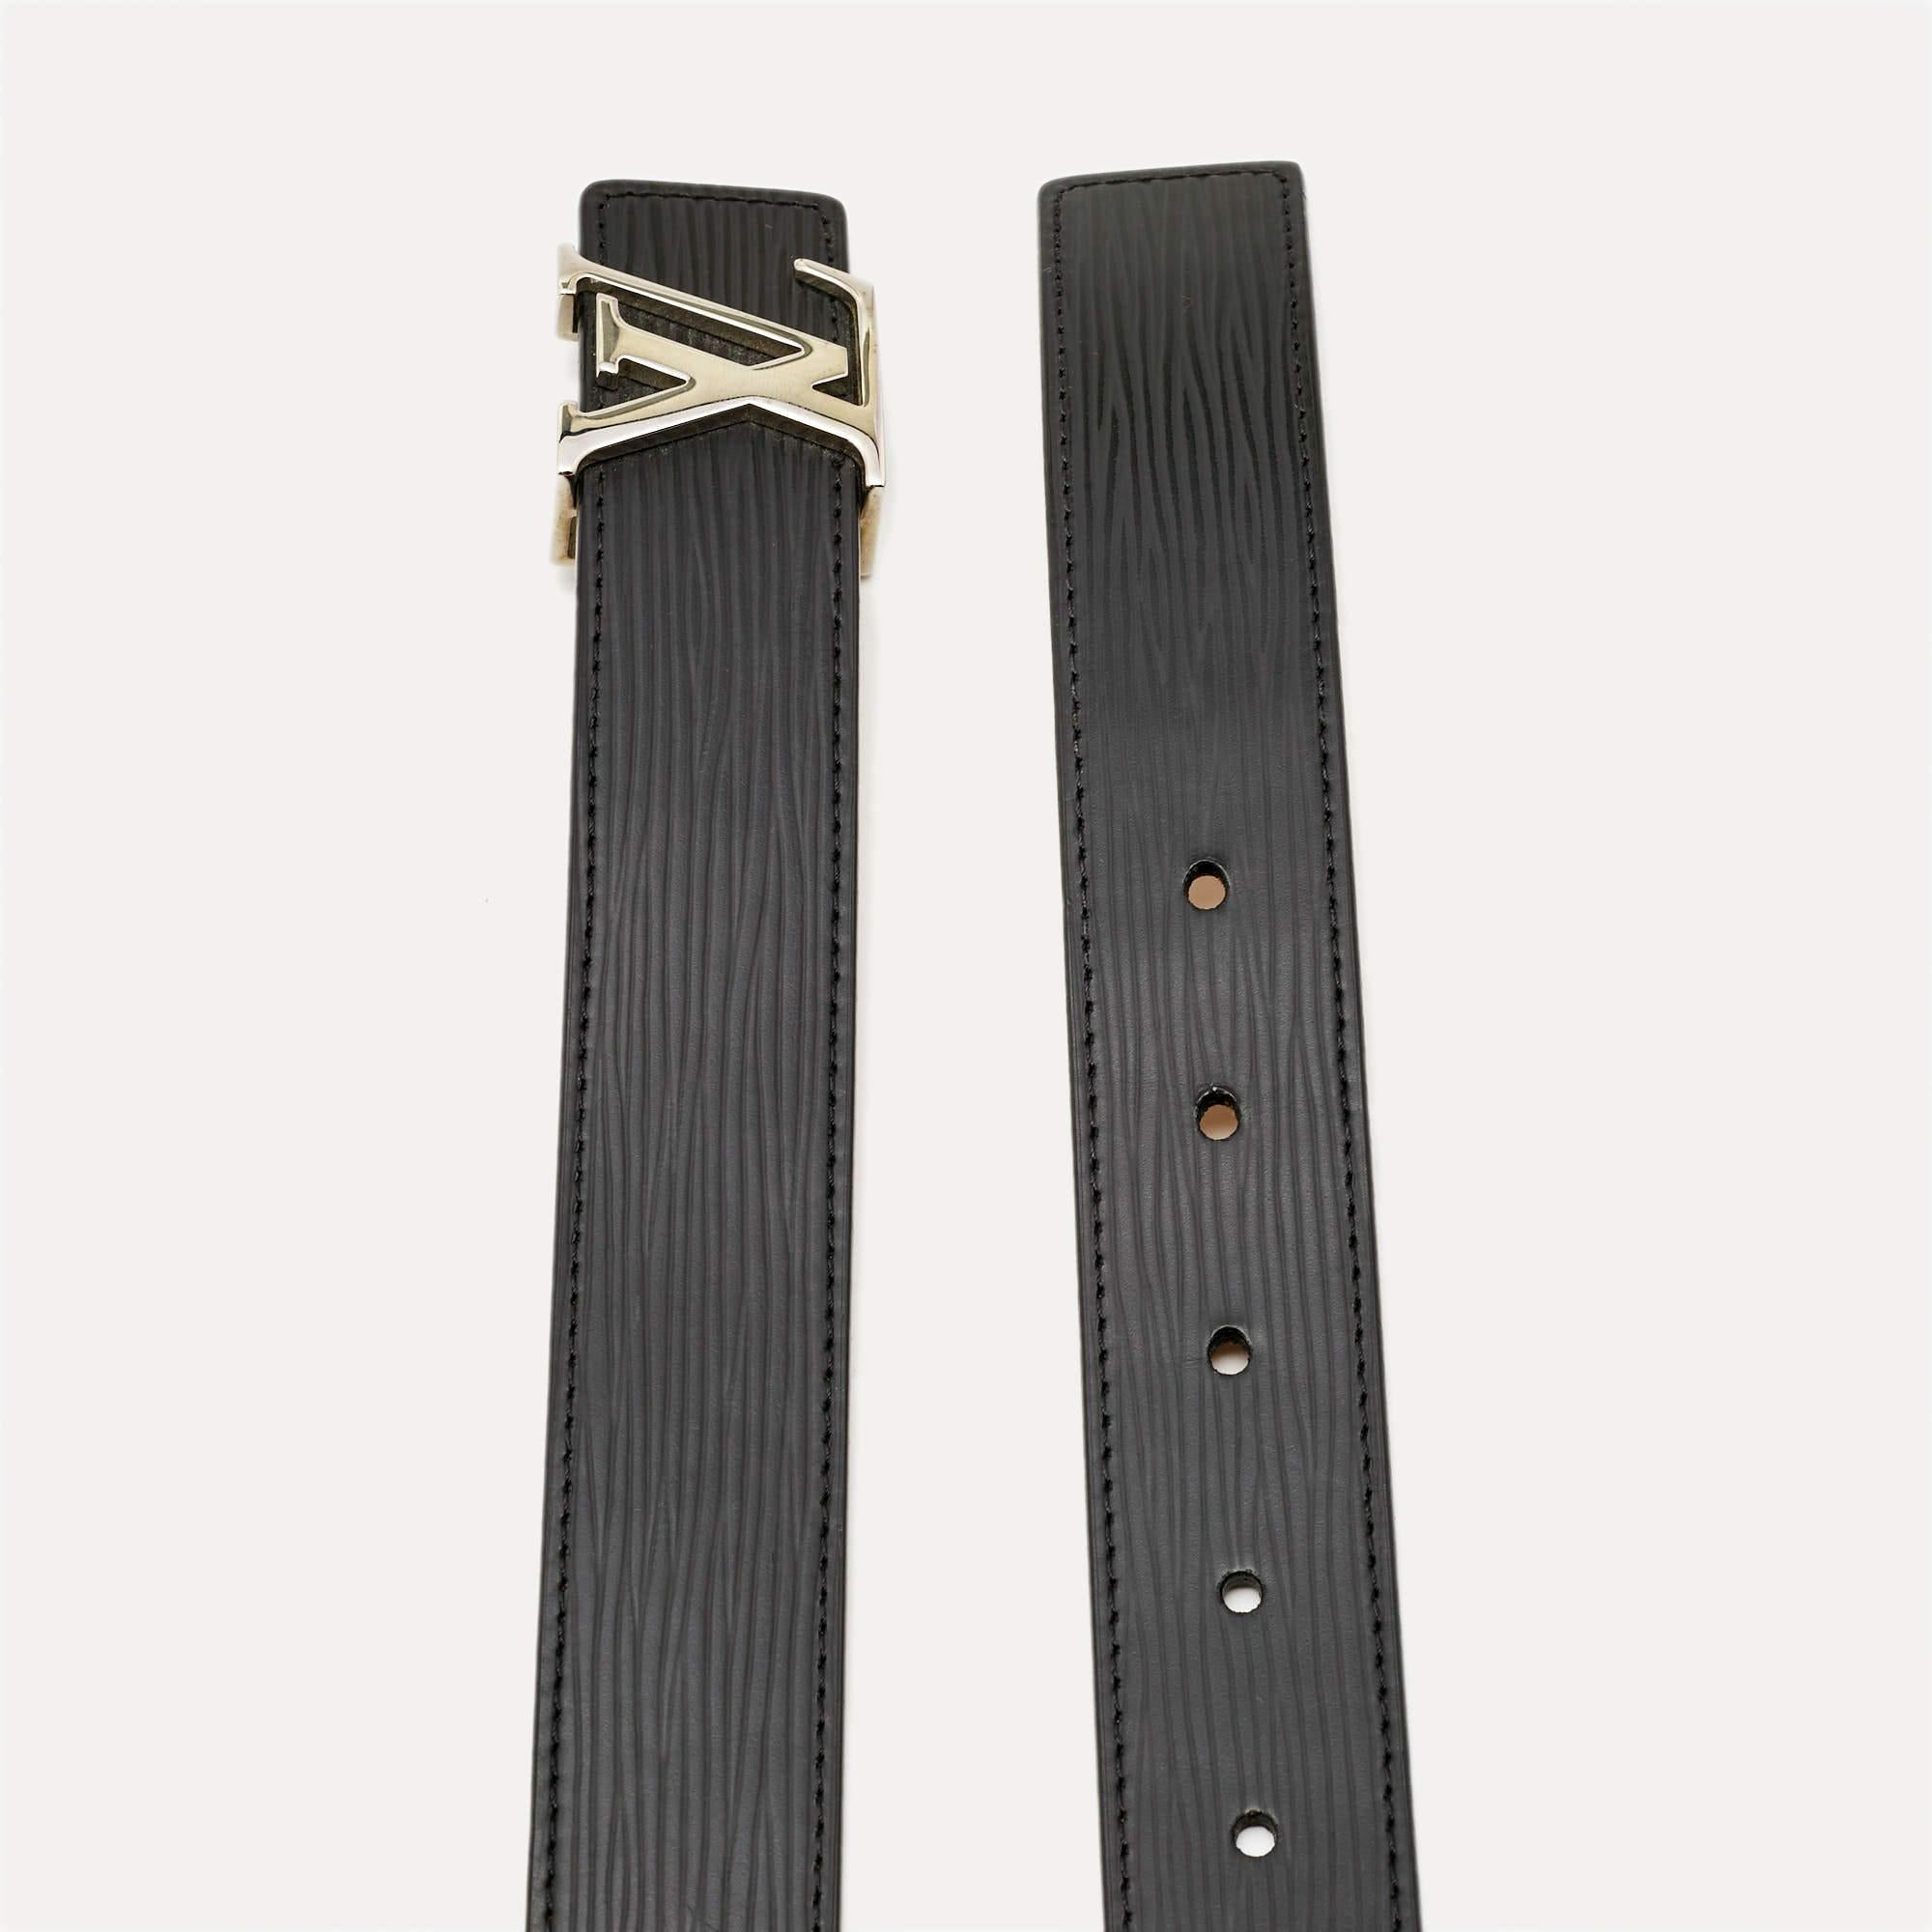 Dieser Initiales-Gürtel von Louis Vuitton ist schlicht im Design, aber sofort als Luxus zu erkennen. Der Epi-Ledergürtel hat eine Schnalle in Form eines vergrößerten LV-Symbols aus silberfarbenem Metall.

Enthält: Original-Staubbeutel, Original-Box

